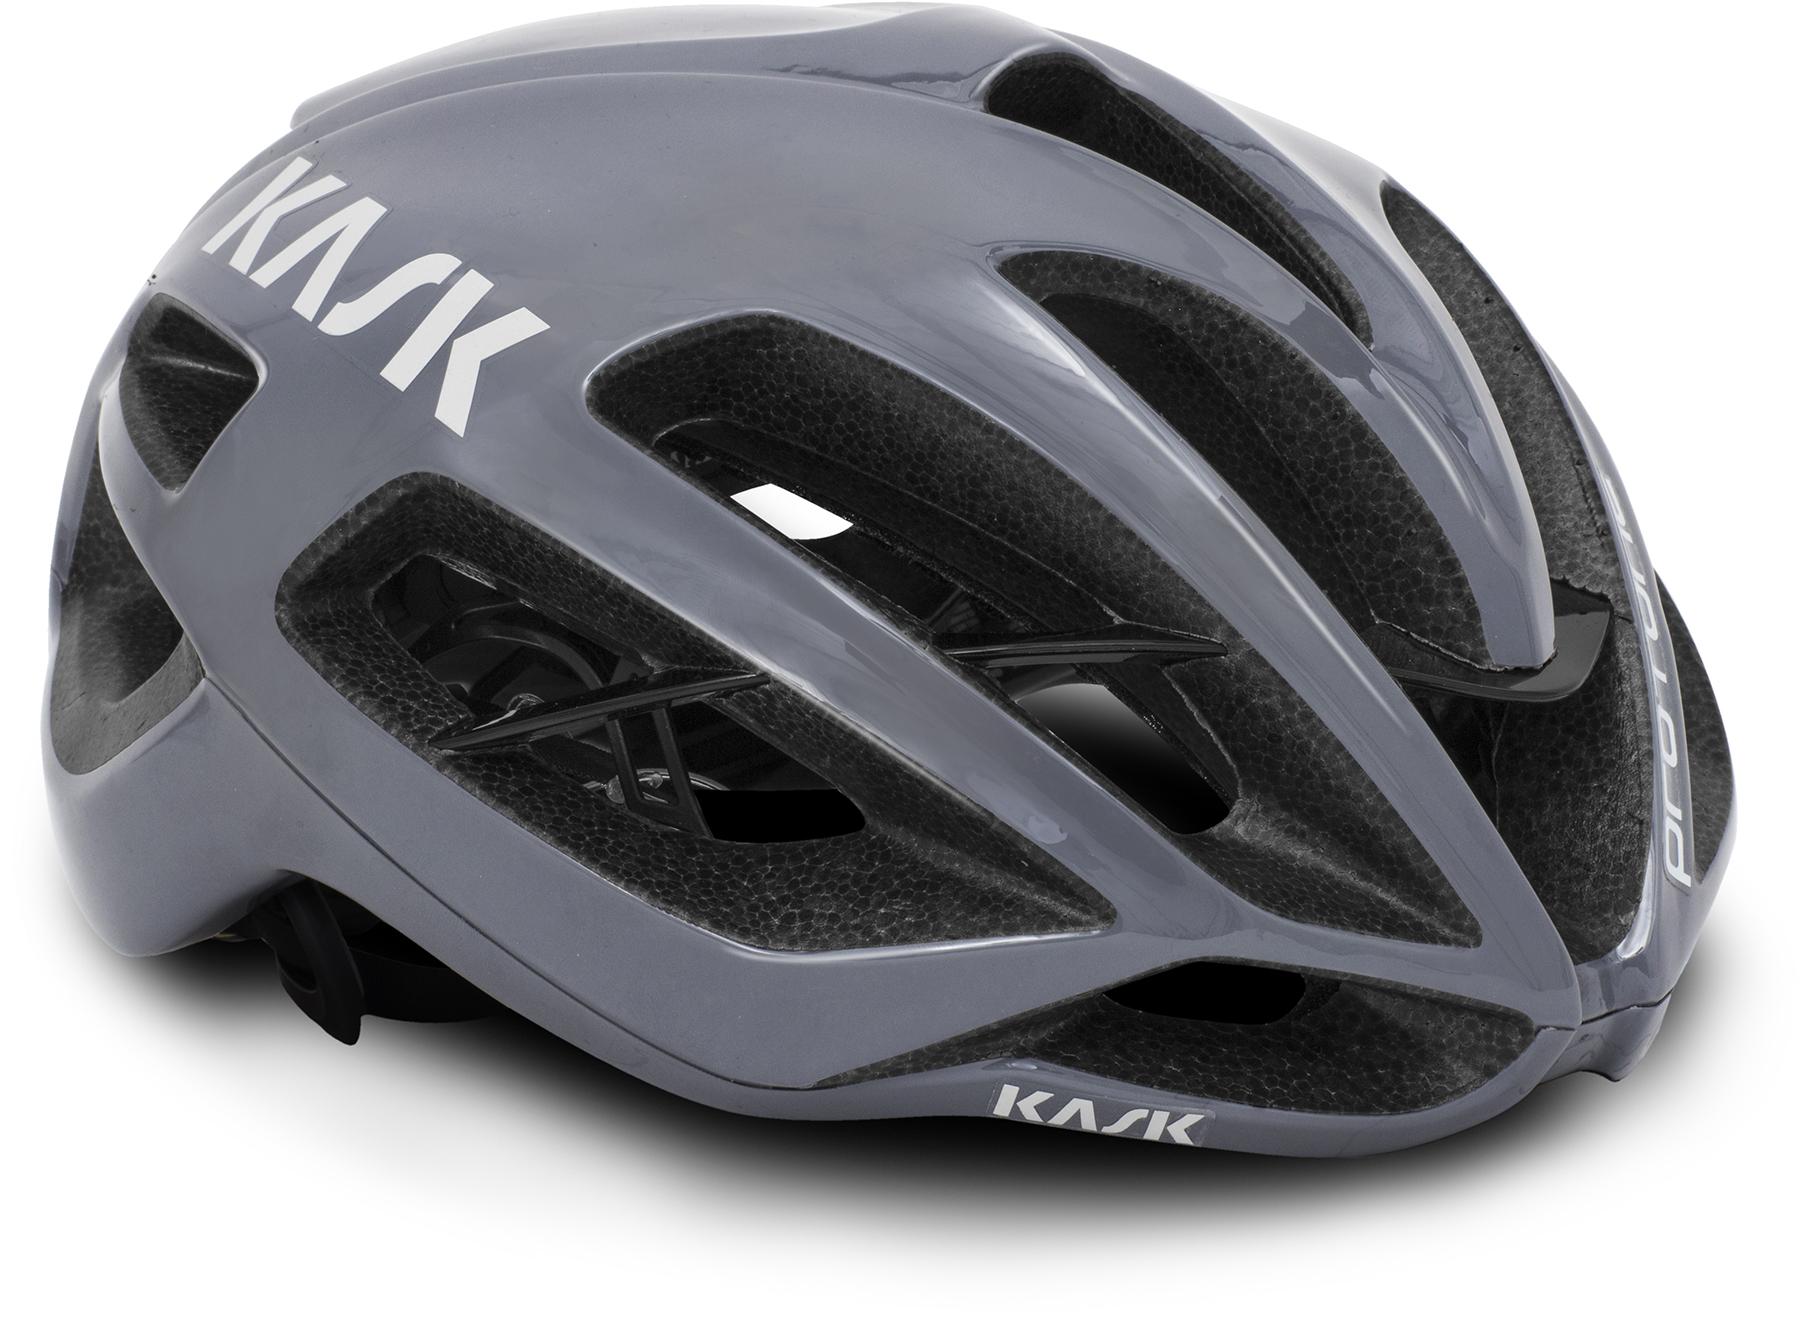 Kask Protone Road Helmet (wg11) - Grey